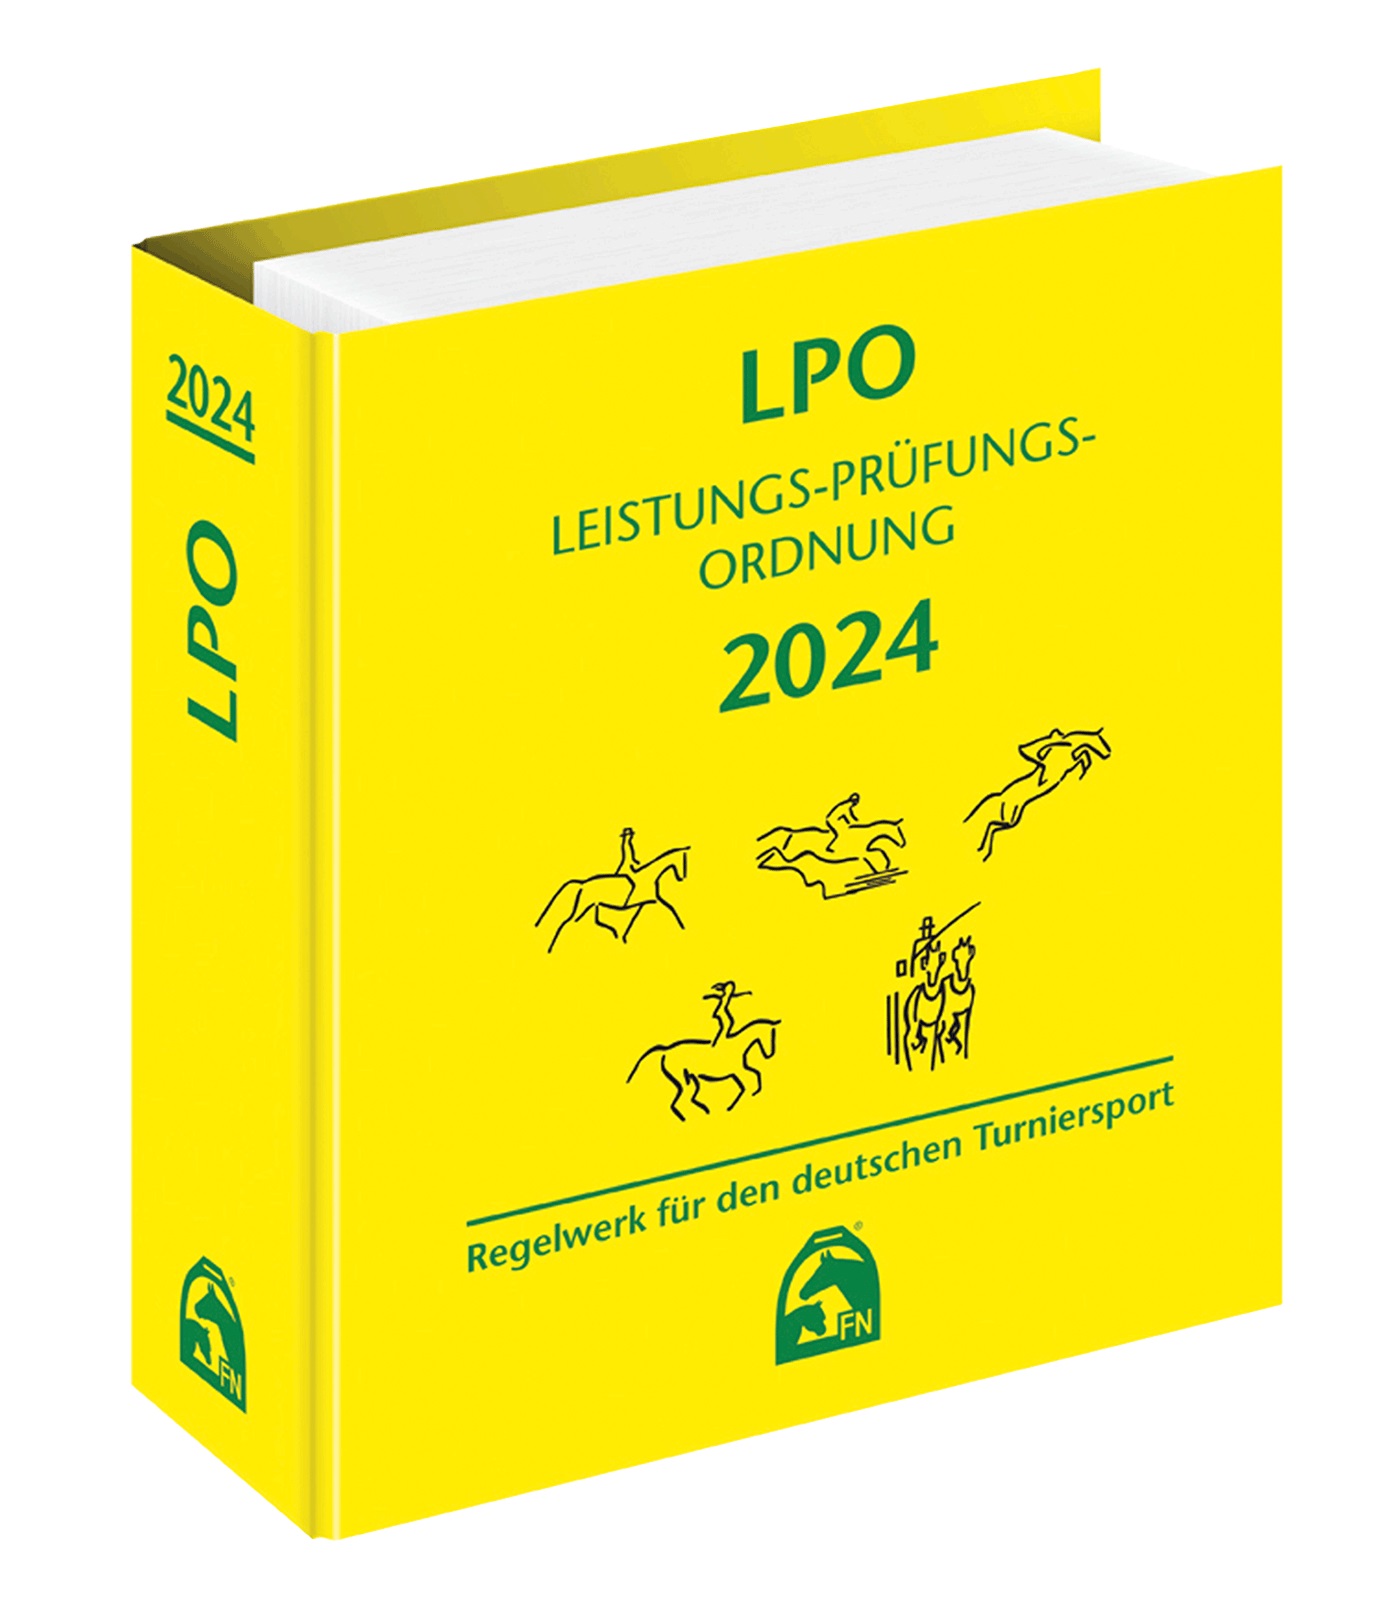 LPO 2024 - Leistungs-Prüfungs-Ordnung